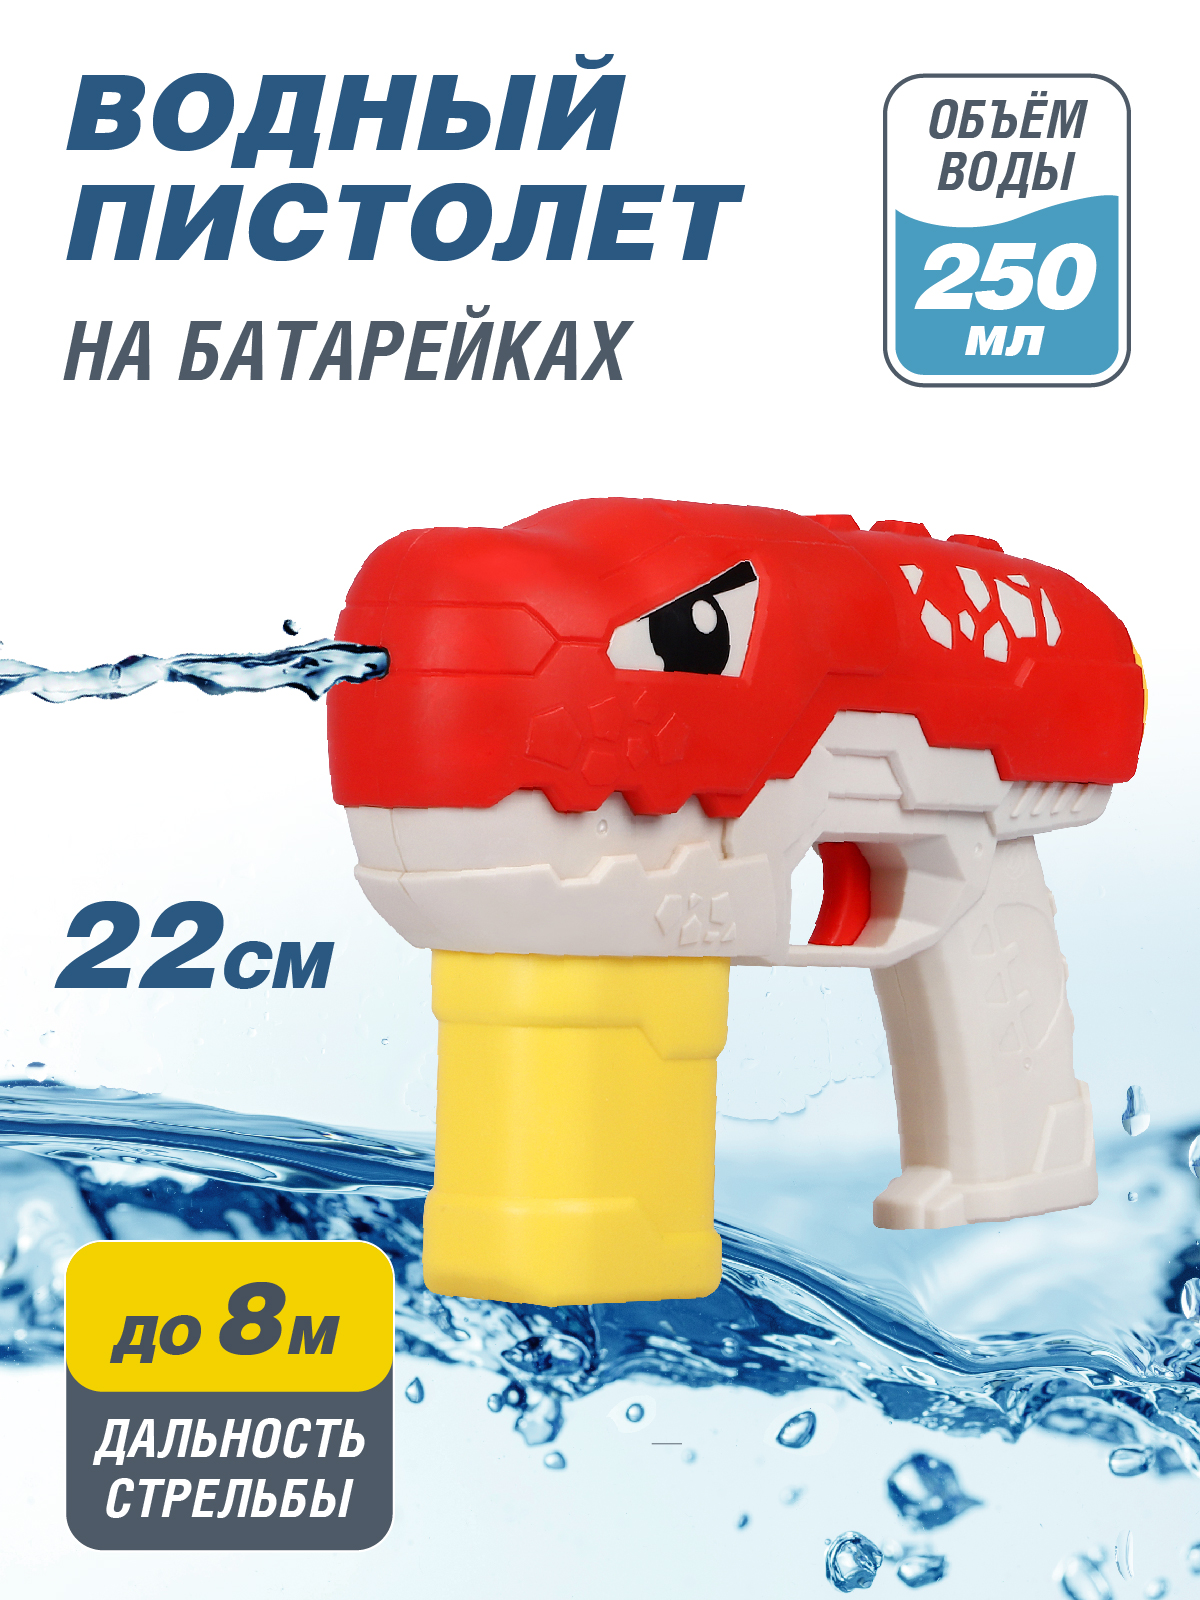 Водяное игрушечное оружие Маленький воин на батарейках, JB0211500 водяное игрушечное оружие на аккумуляторе маленький воин jb0211496